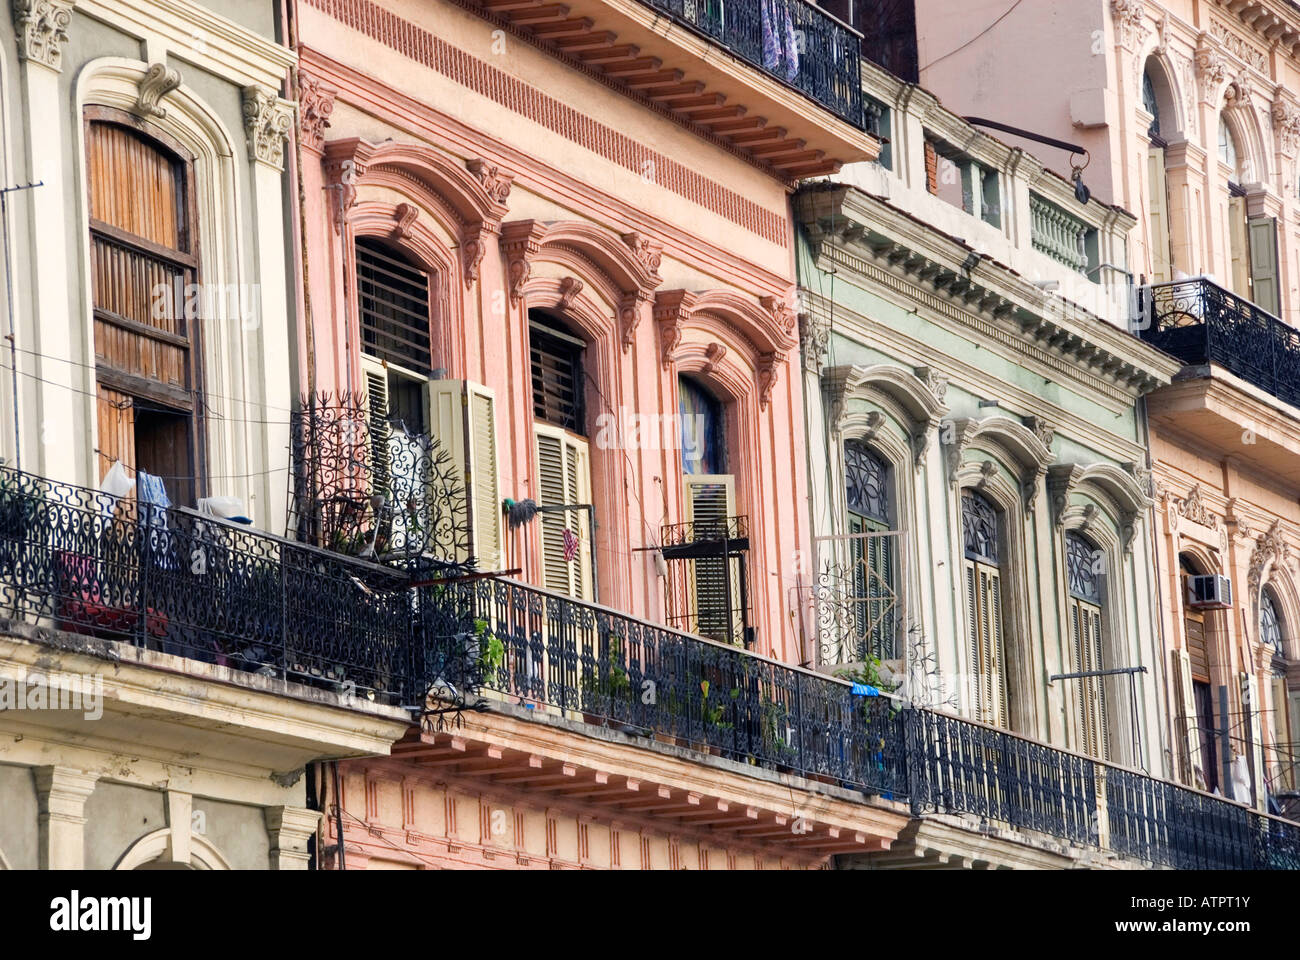 Row of houses / Havana Stock Photo